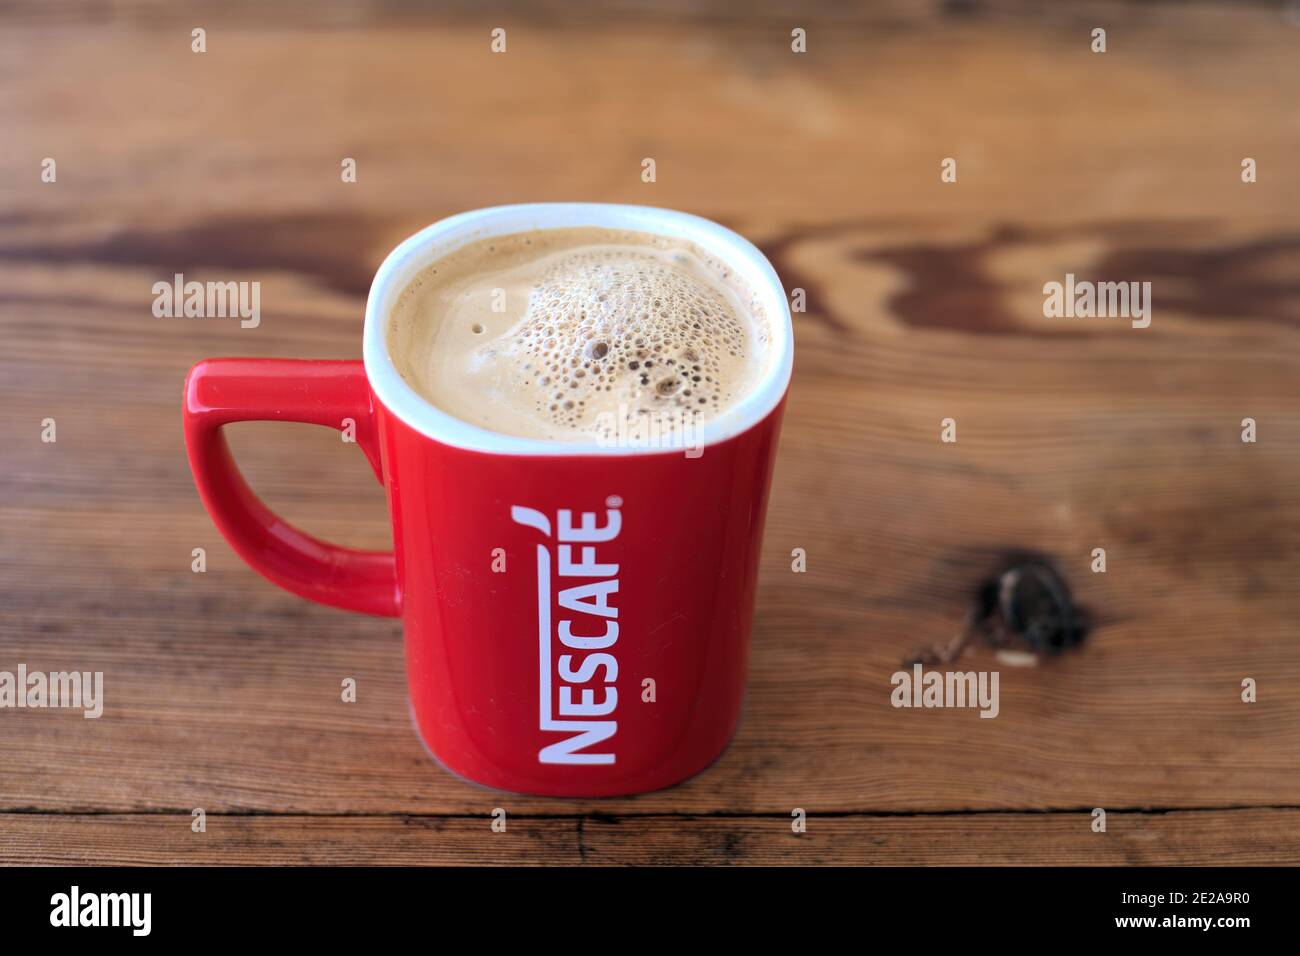 https://c8.alamy.com/comp/2E2A9R0/volos-greece-jan-08-2021-nescafe-red-cup-mug-coffee-12-oz-red-printed-white-logo-ceramic-filled-with-hot-coffee-2E2A9R0.jpg